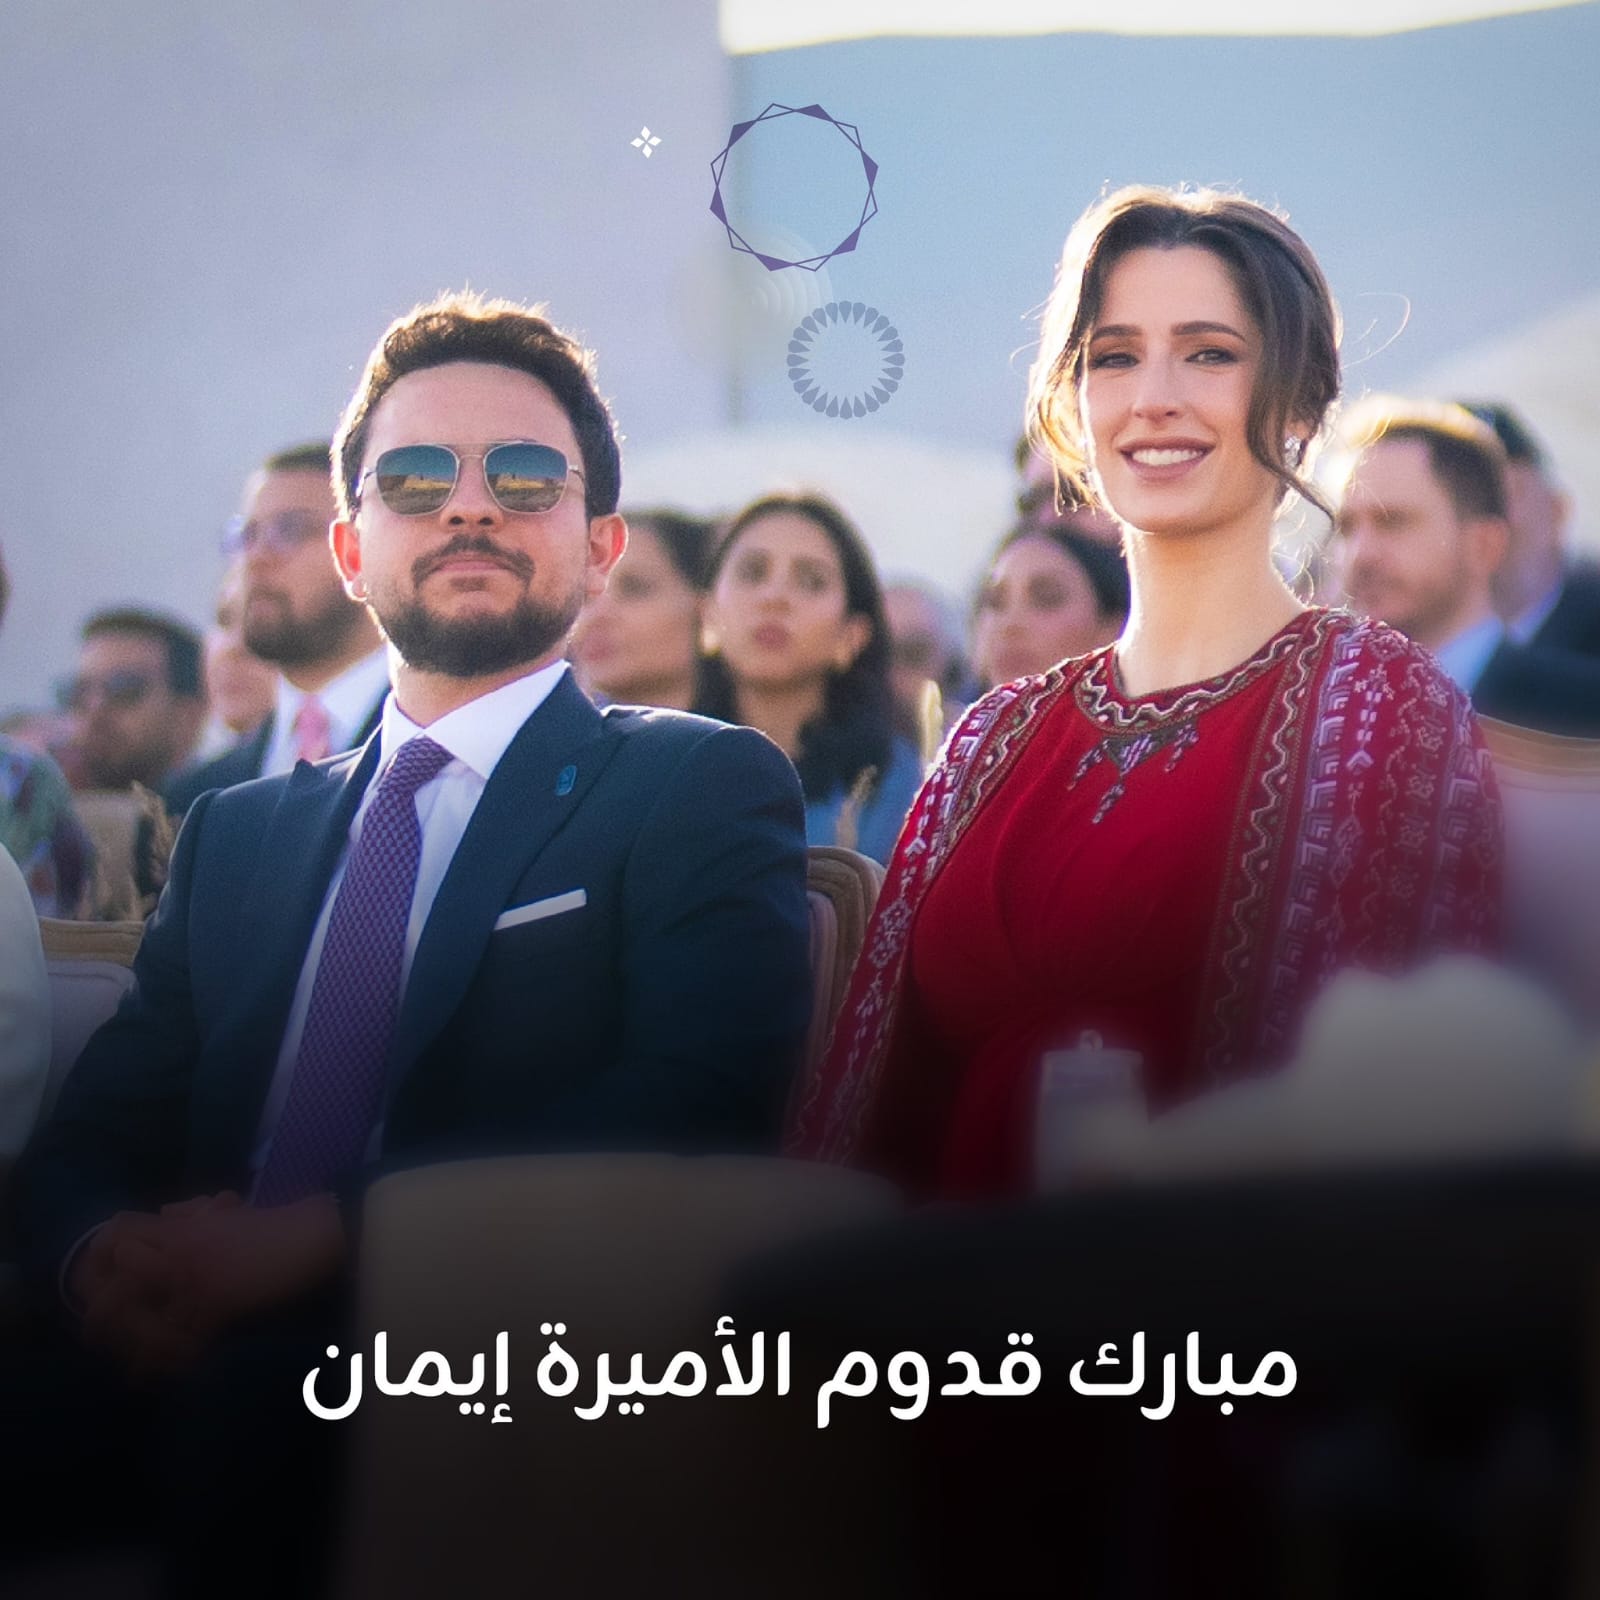 شركة زين تهنئ بقدوم الأميرة إيمان بنت الحسين